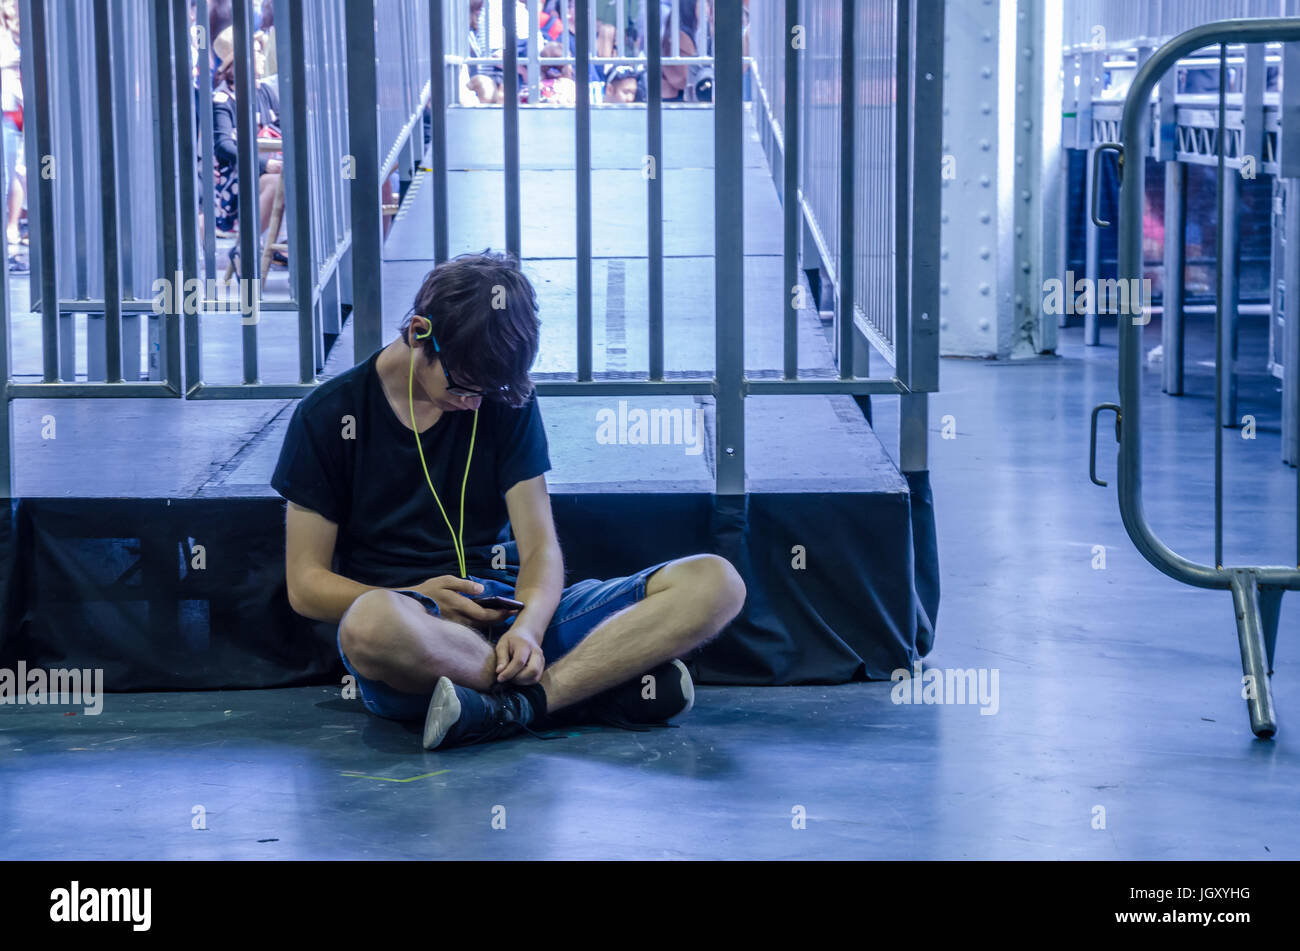 Un adulto joven sentada sola en el piso listado de música en un teléfono móvil. Foto de stock